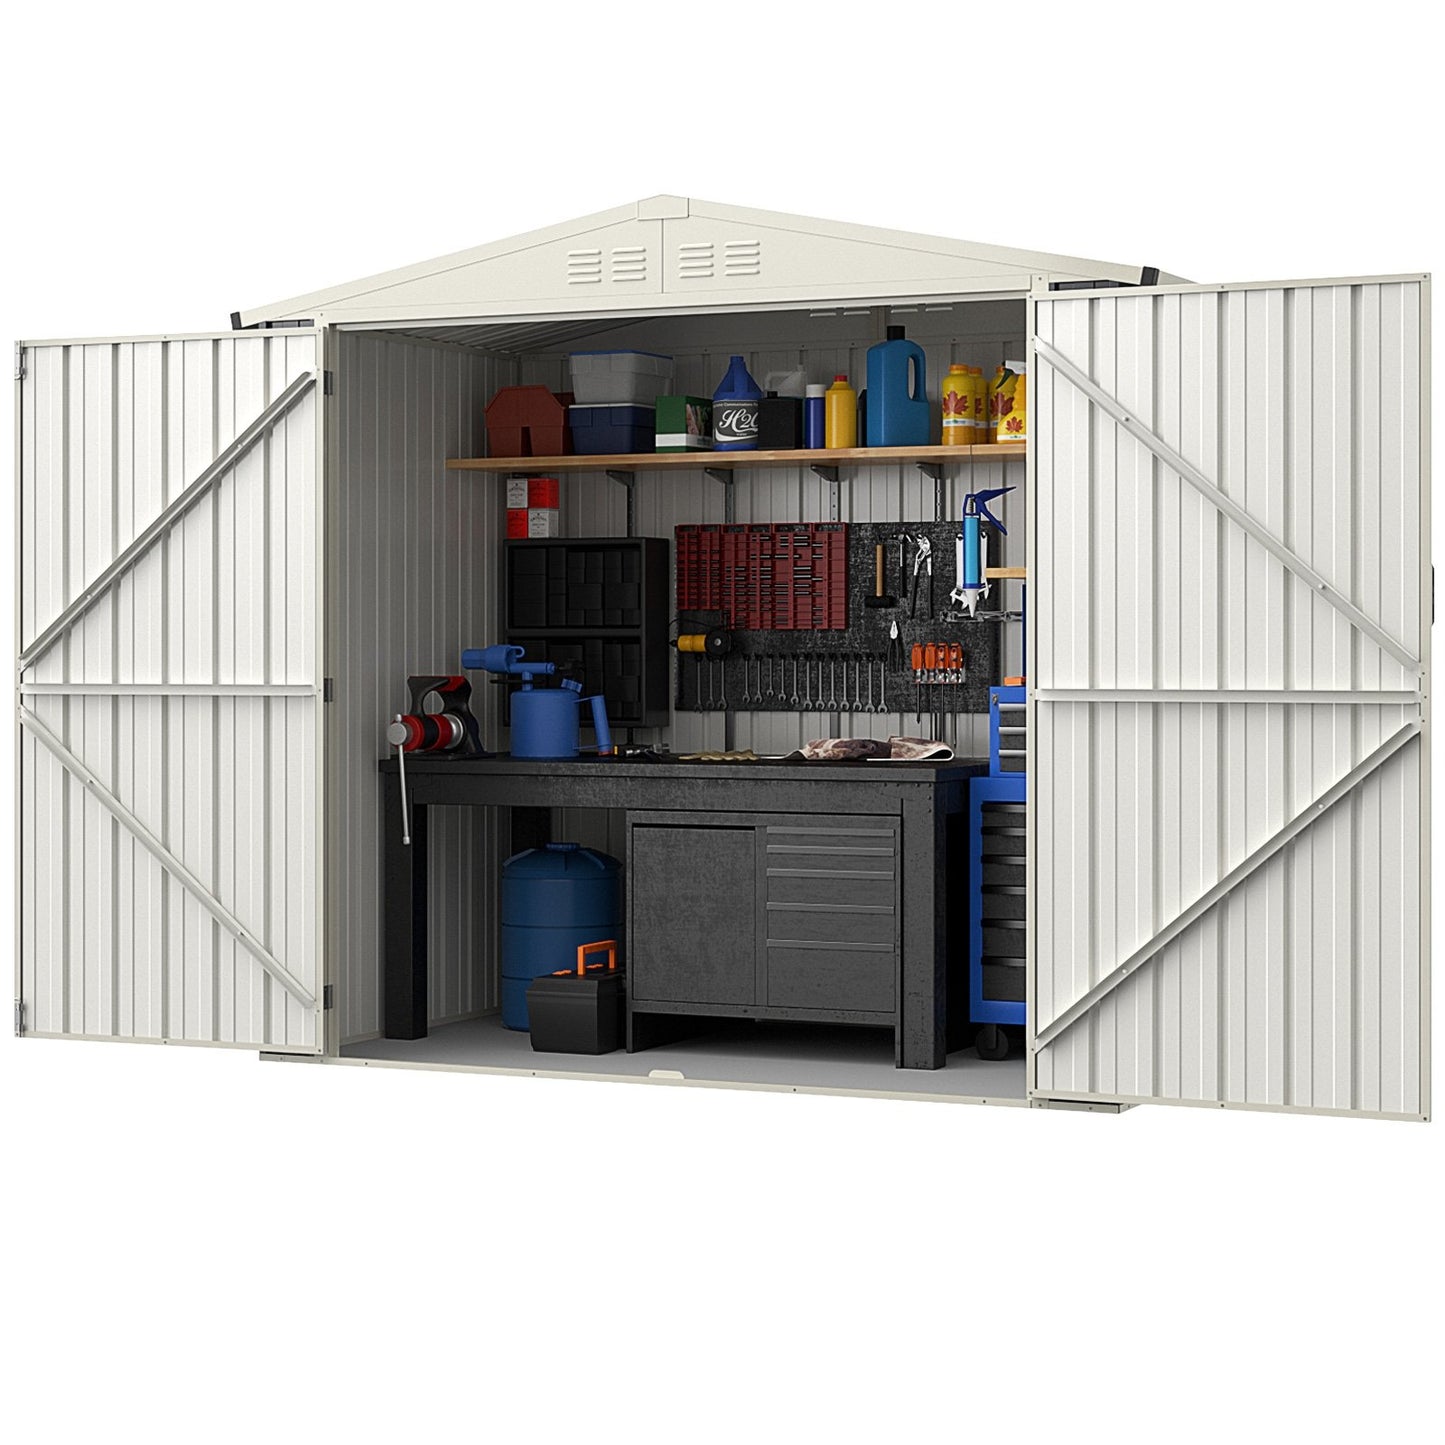 7 x 4 Feet Metal Outdoor Storage Shed with Lockable Door, Gray